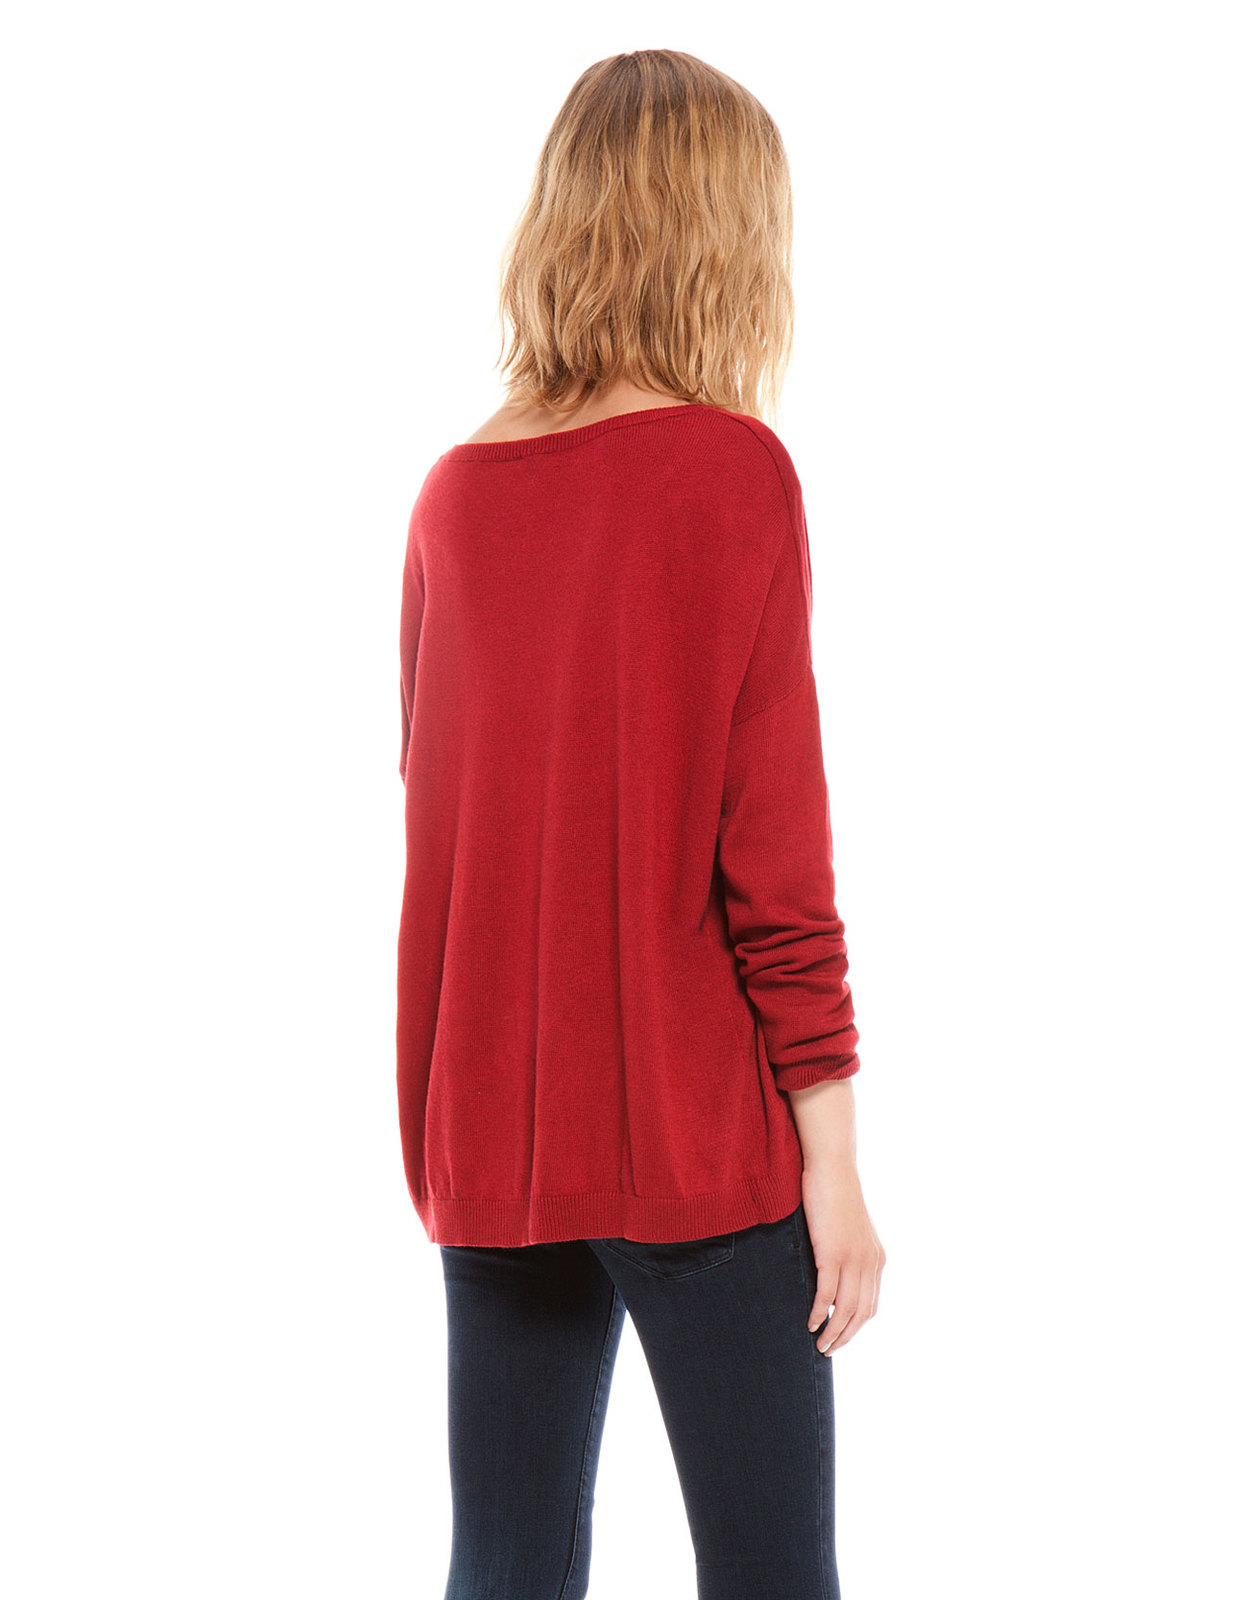 Bershka vörös színű kötött pulóver 2013 fotója